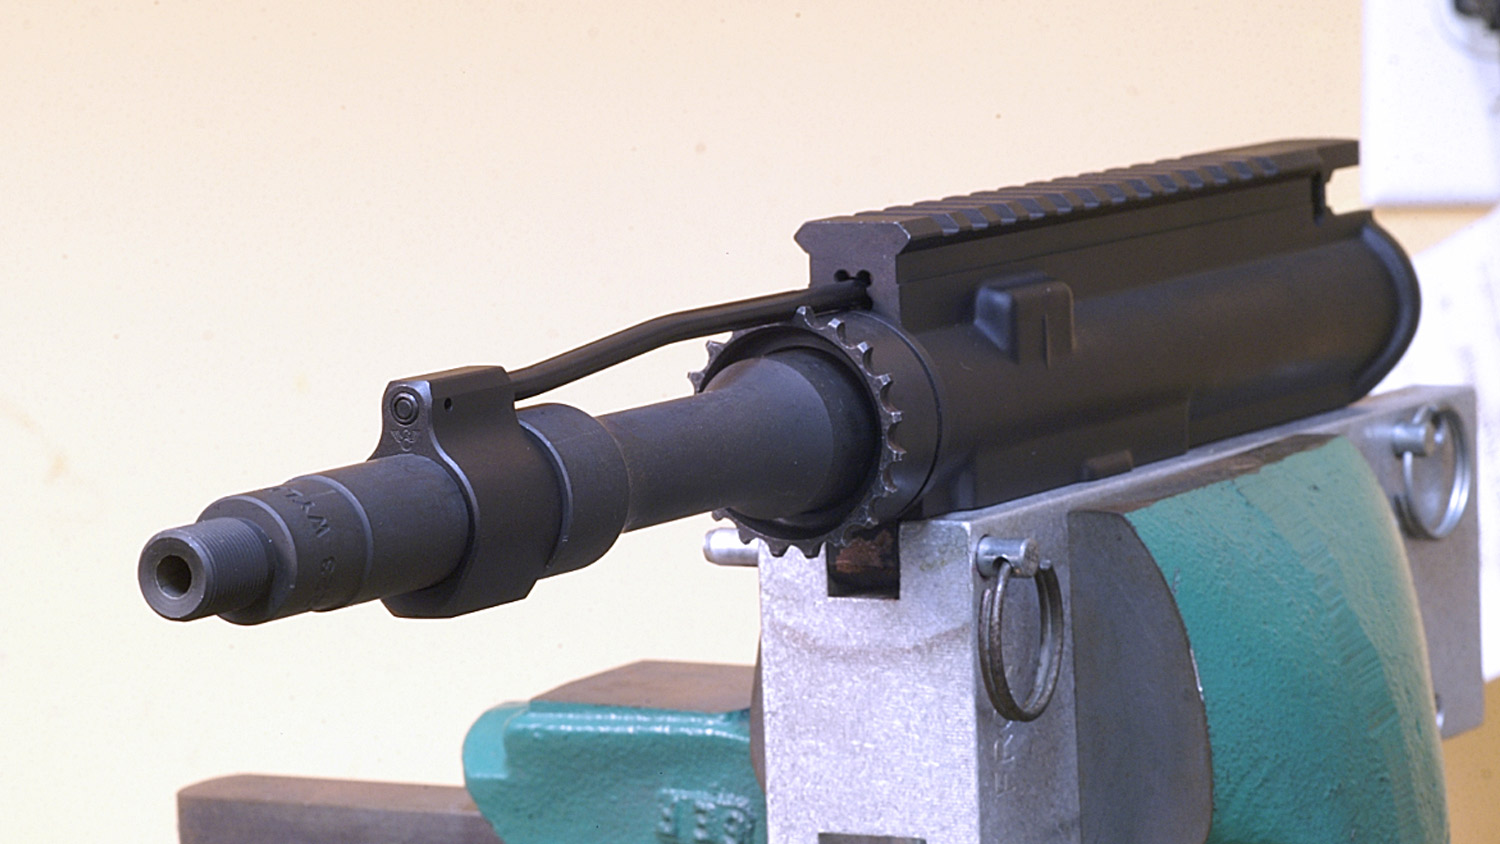 Pistol-length 7.5-inch barrel